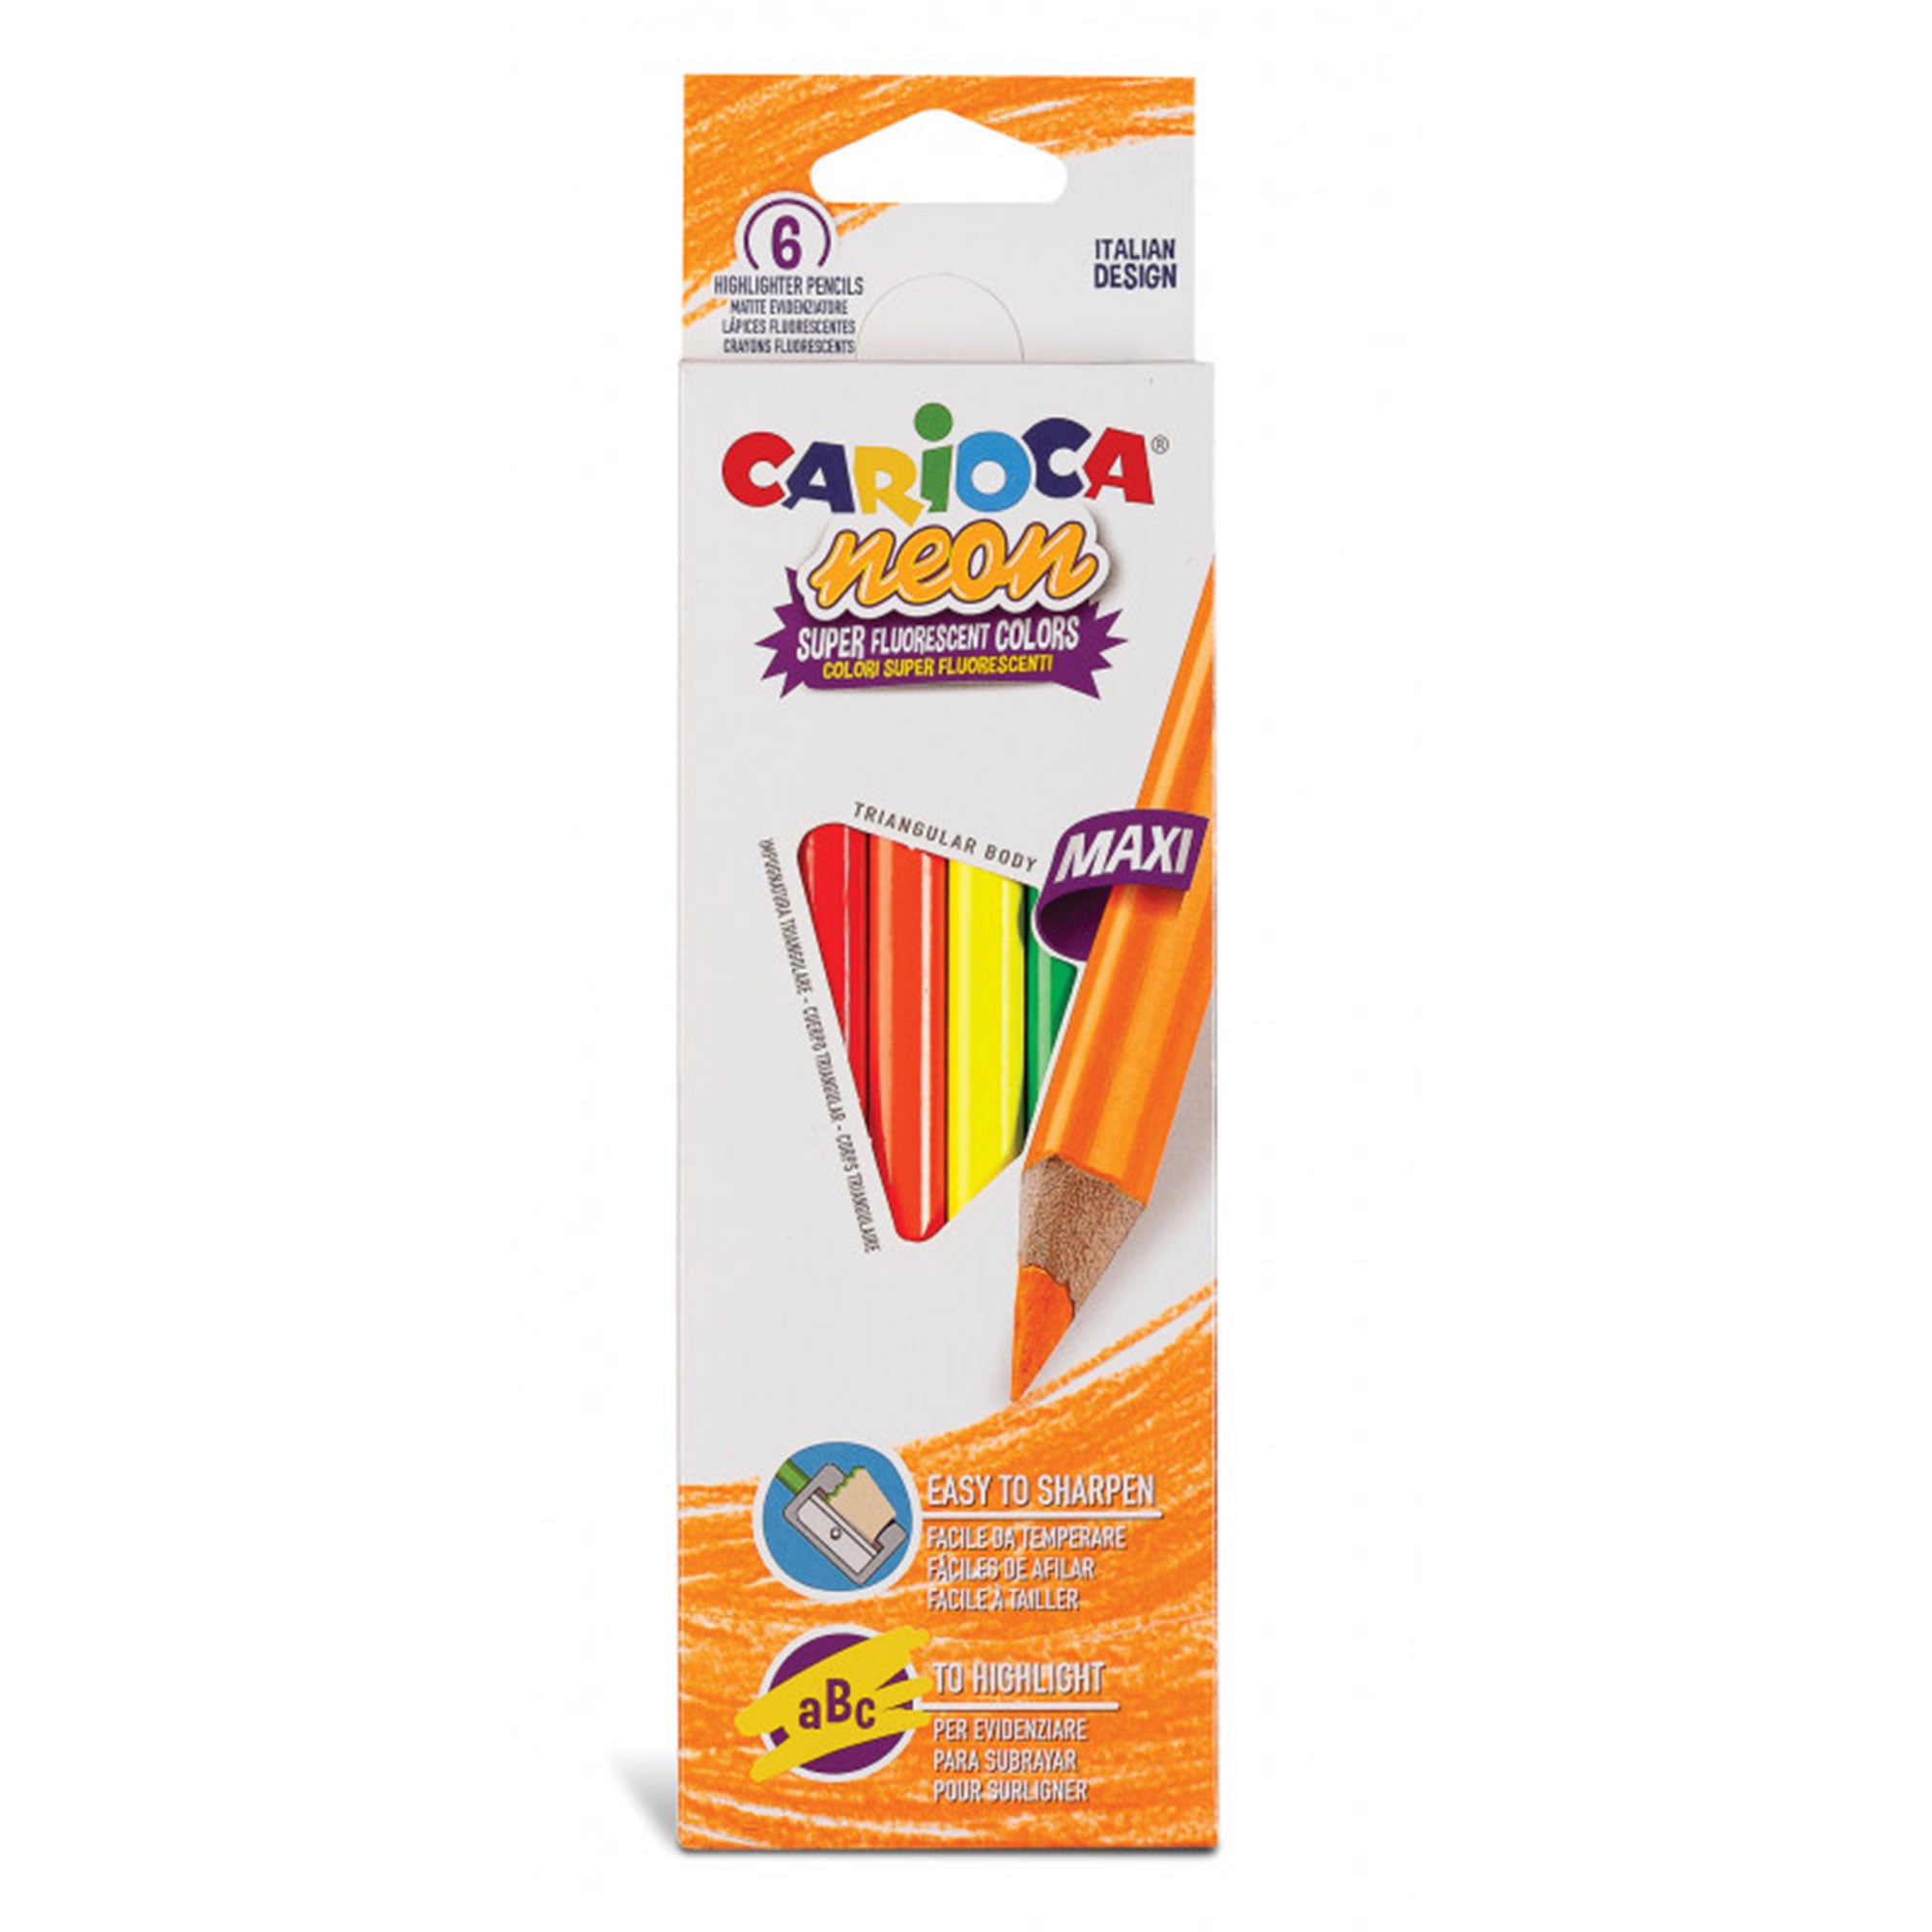 Crayon carioca Baby 3-en-1, boîte de 6 pièces de couleurs assorties